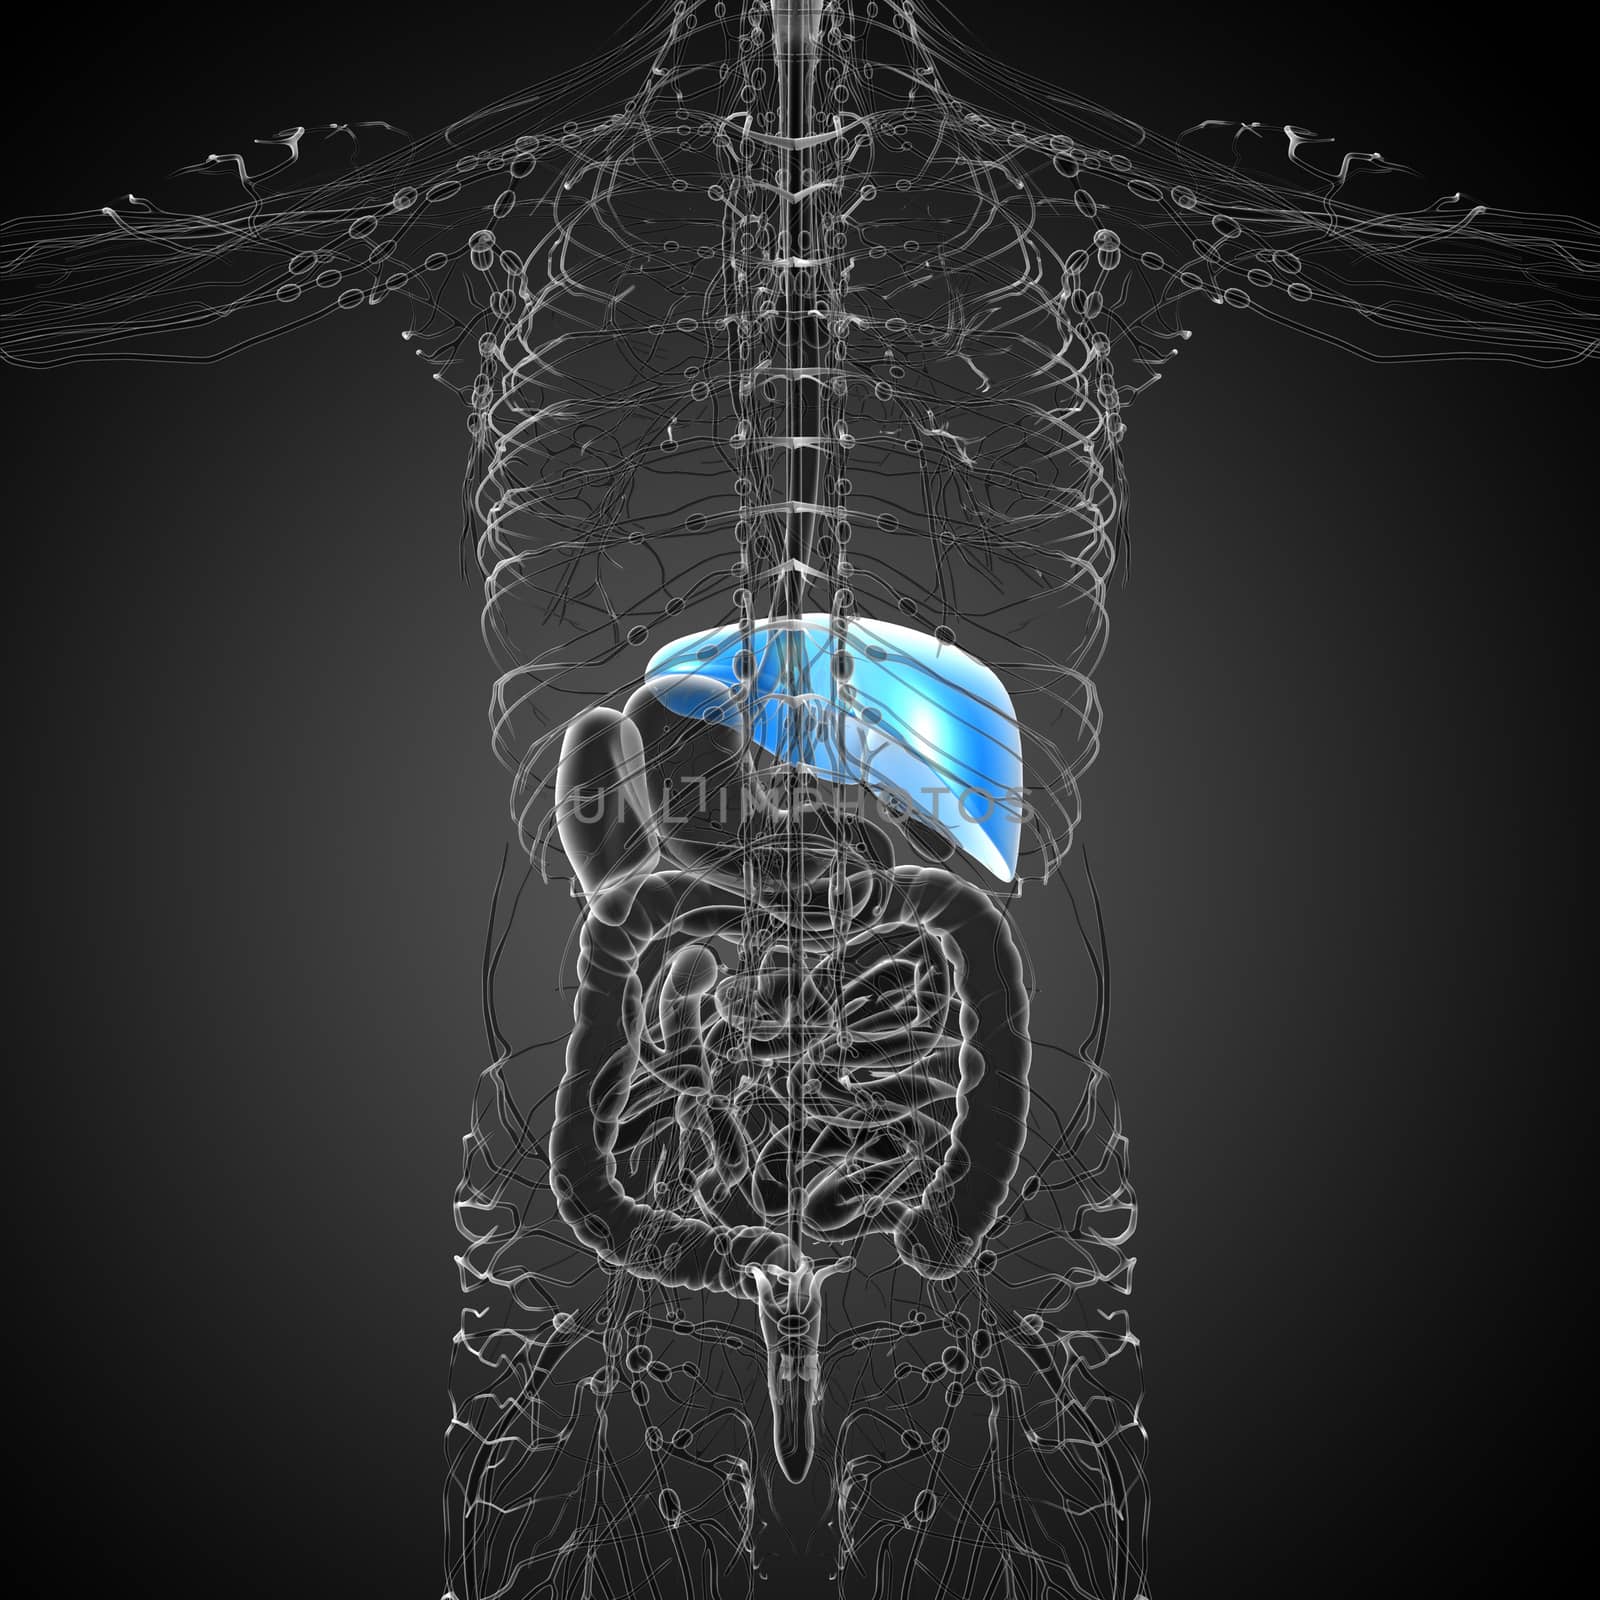 3d render medical illustration of the liver - back view